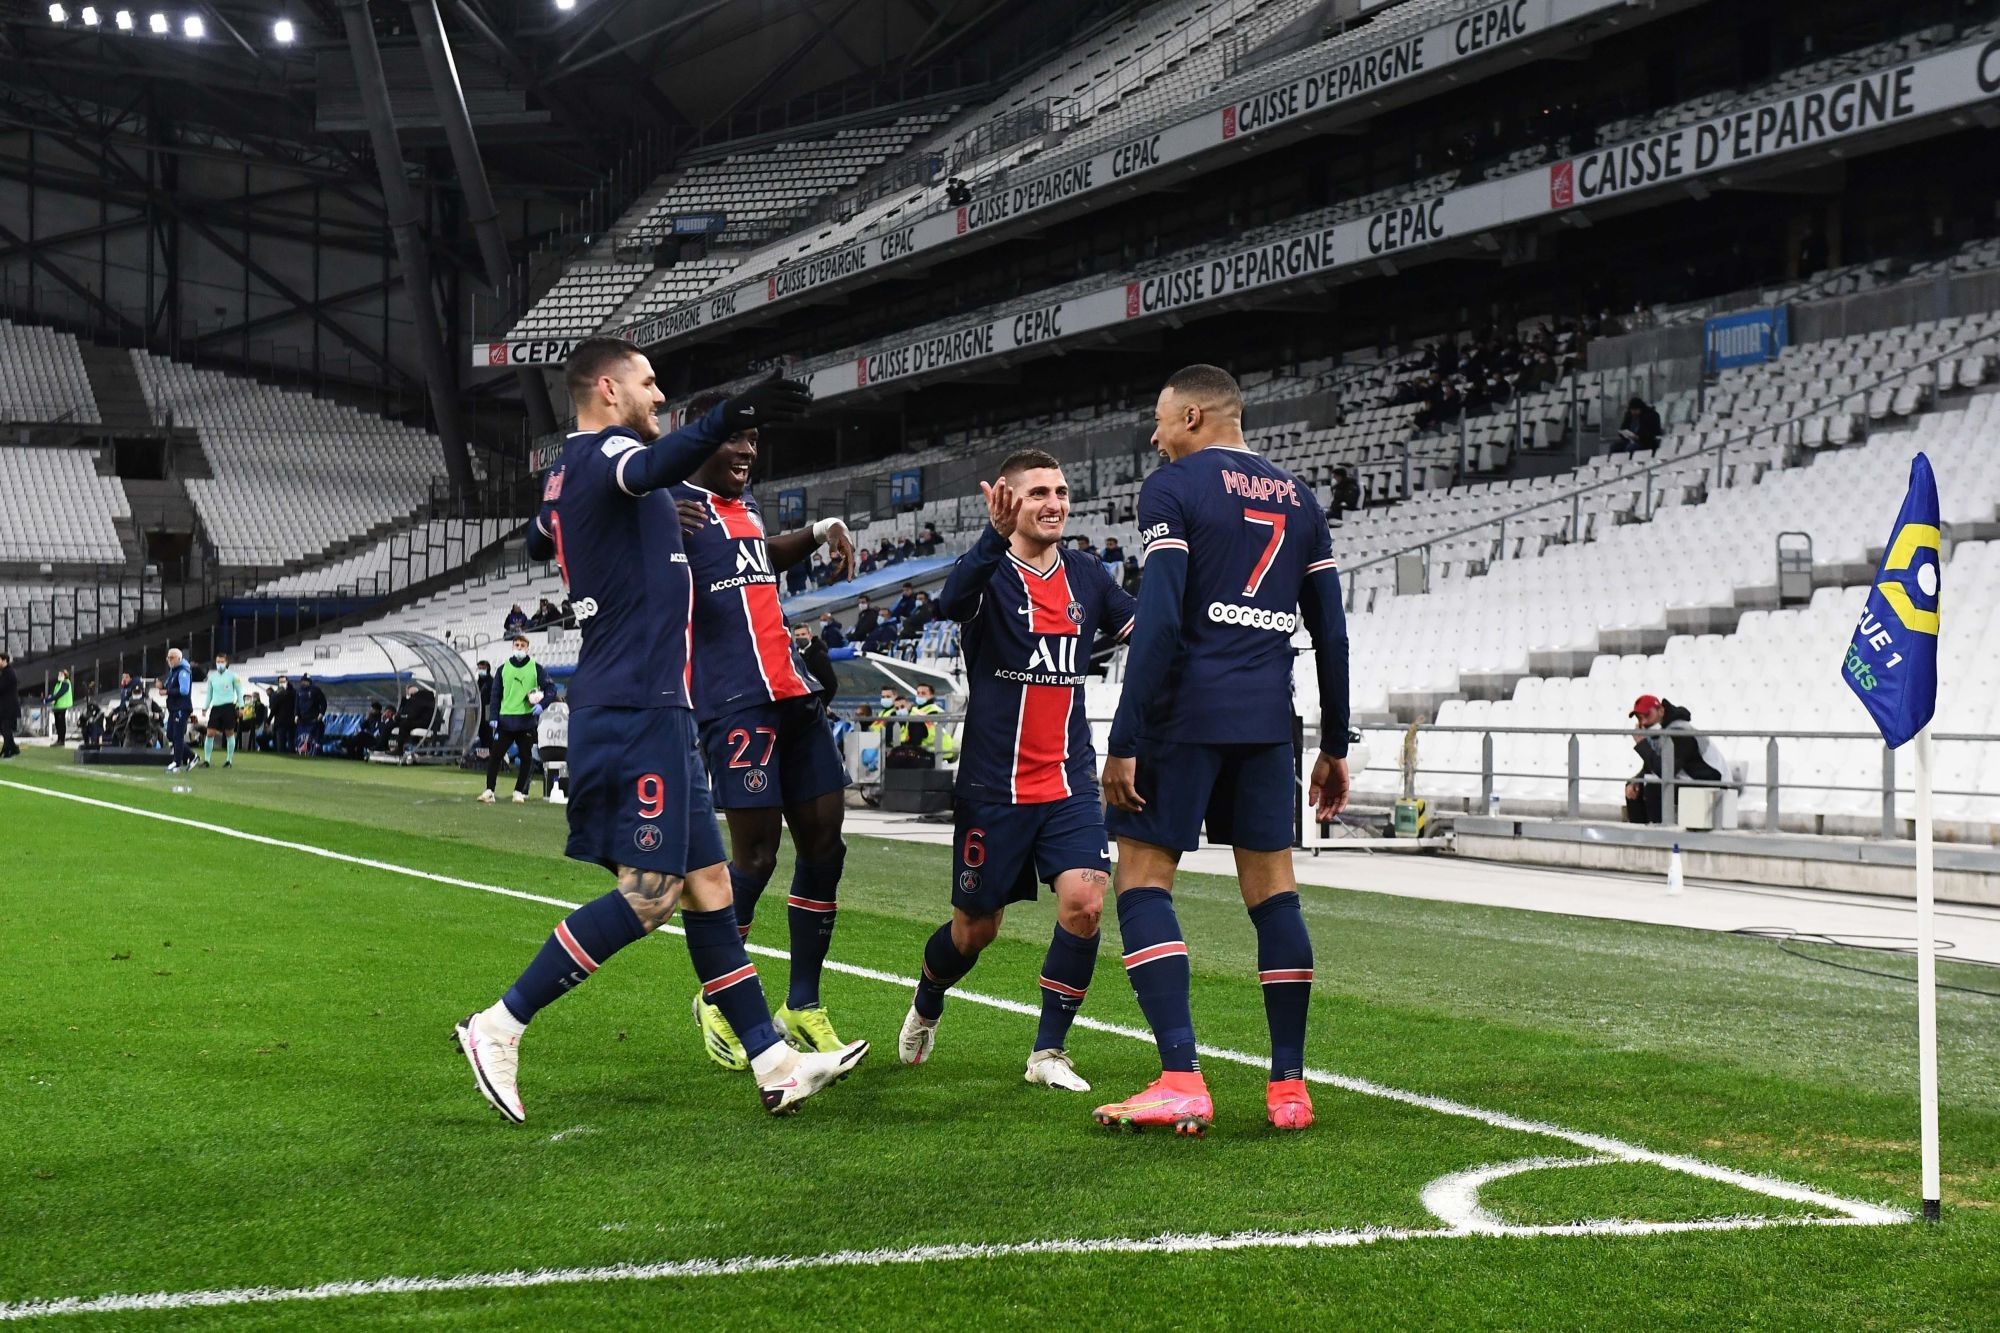 Les revenus de l'Olympique Lyonnais ont chuté de 35% en 2020-2021